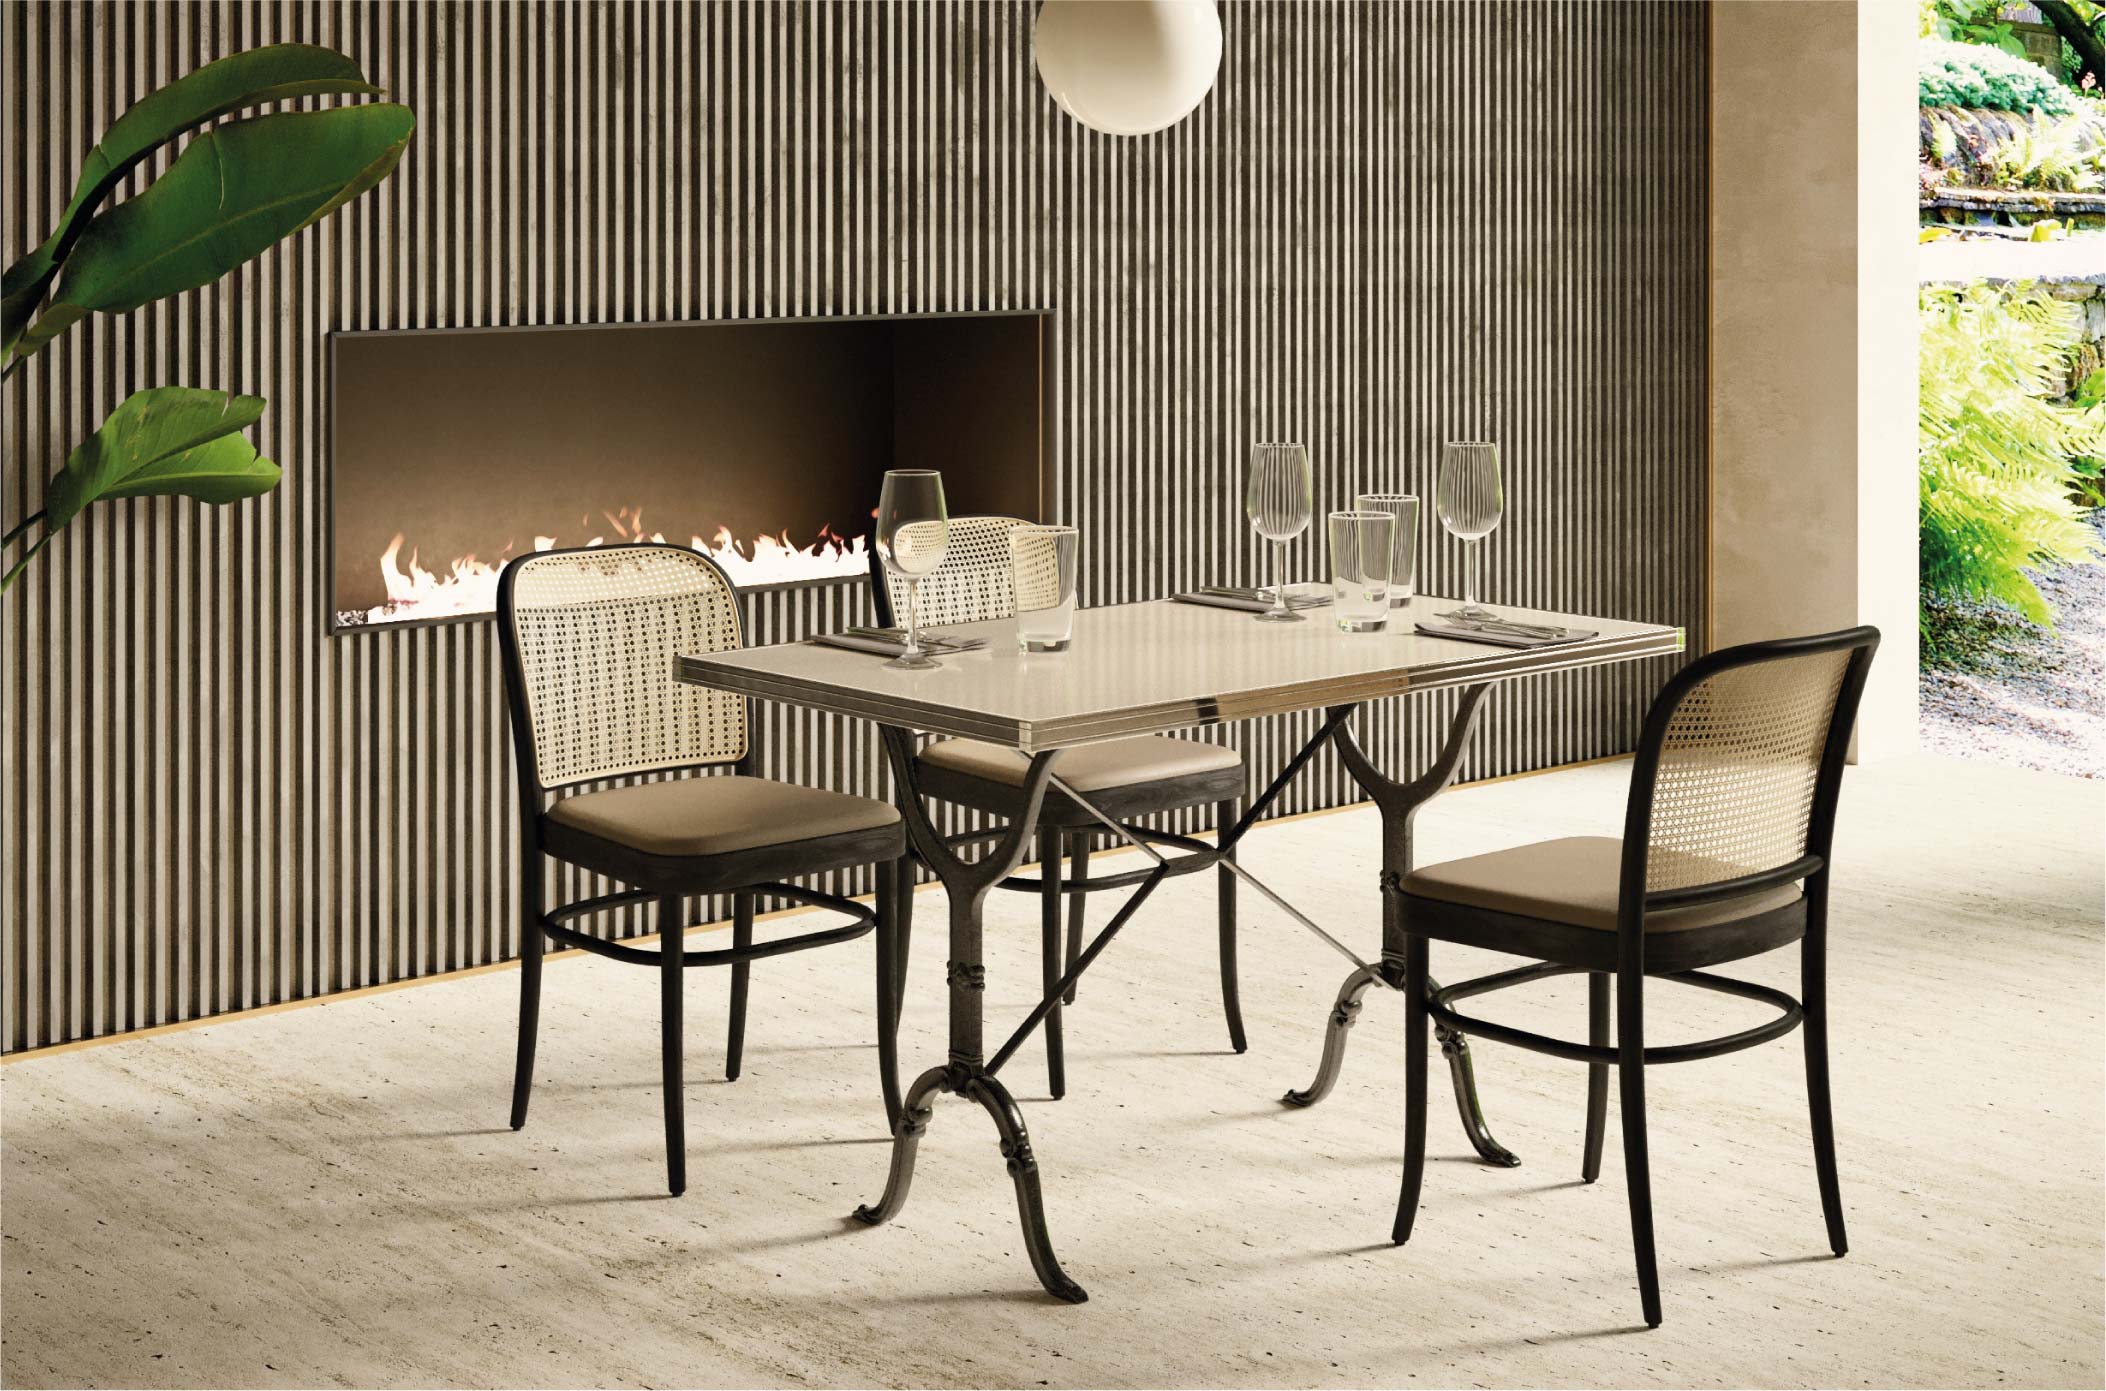 Ambiance salon avec table en émaille blanche 120 x 70 cm